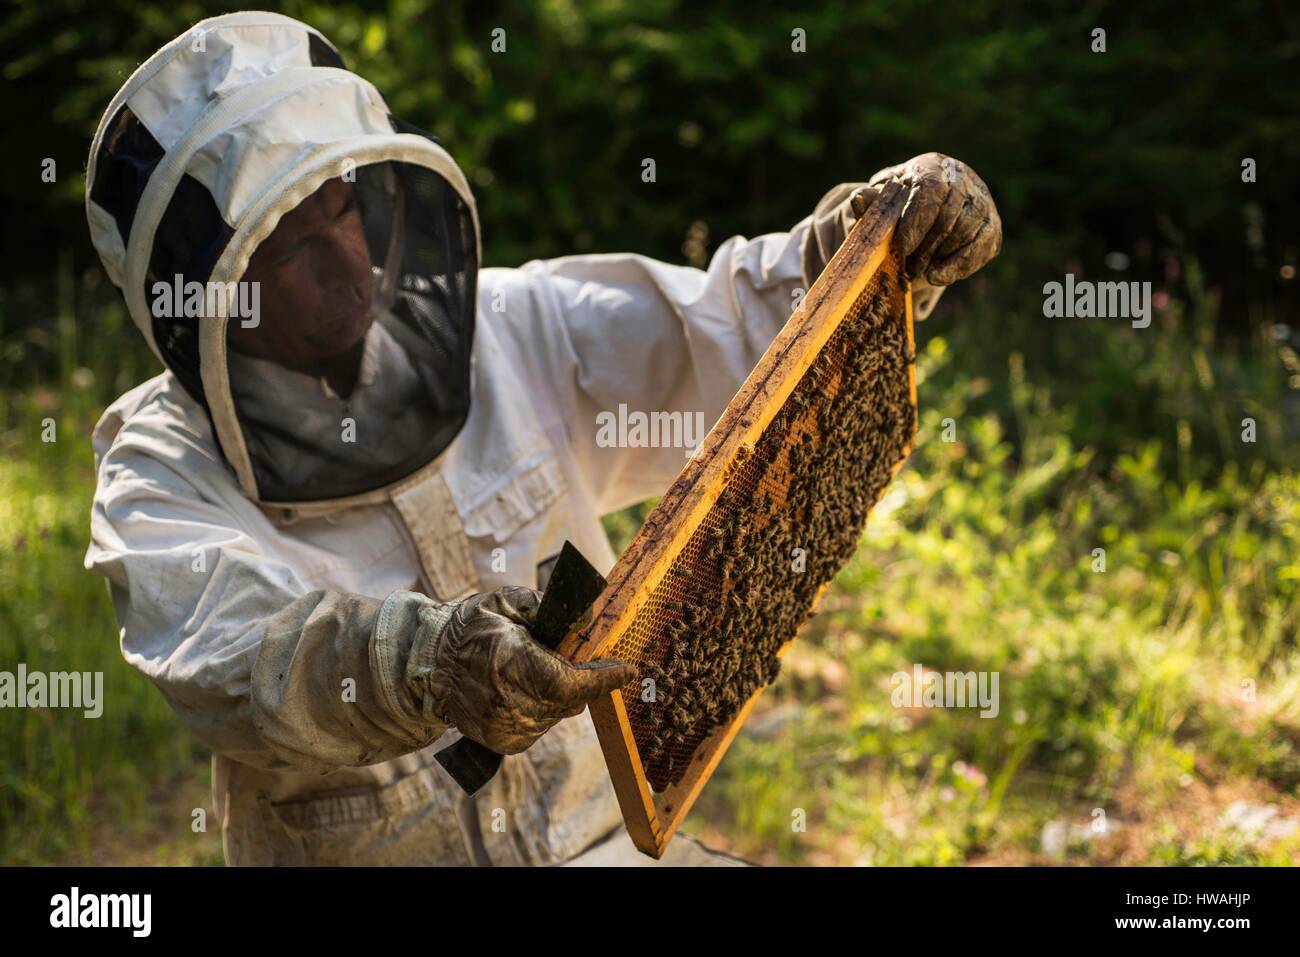 France, Hautes Alpes, Parc Naturel Régional du Queyras, aiguilles, Michel Collombon apiculteur, le contrôle de l'apiculture et l'mielleux Banque D'Images